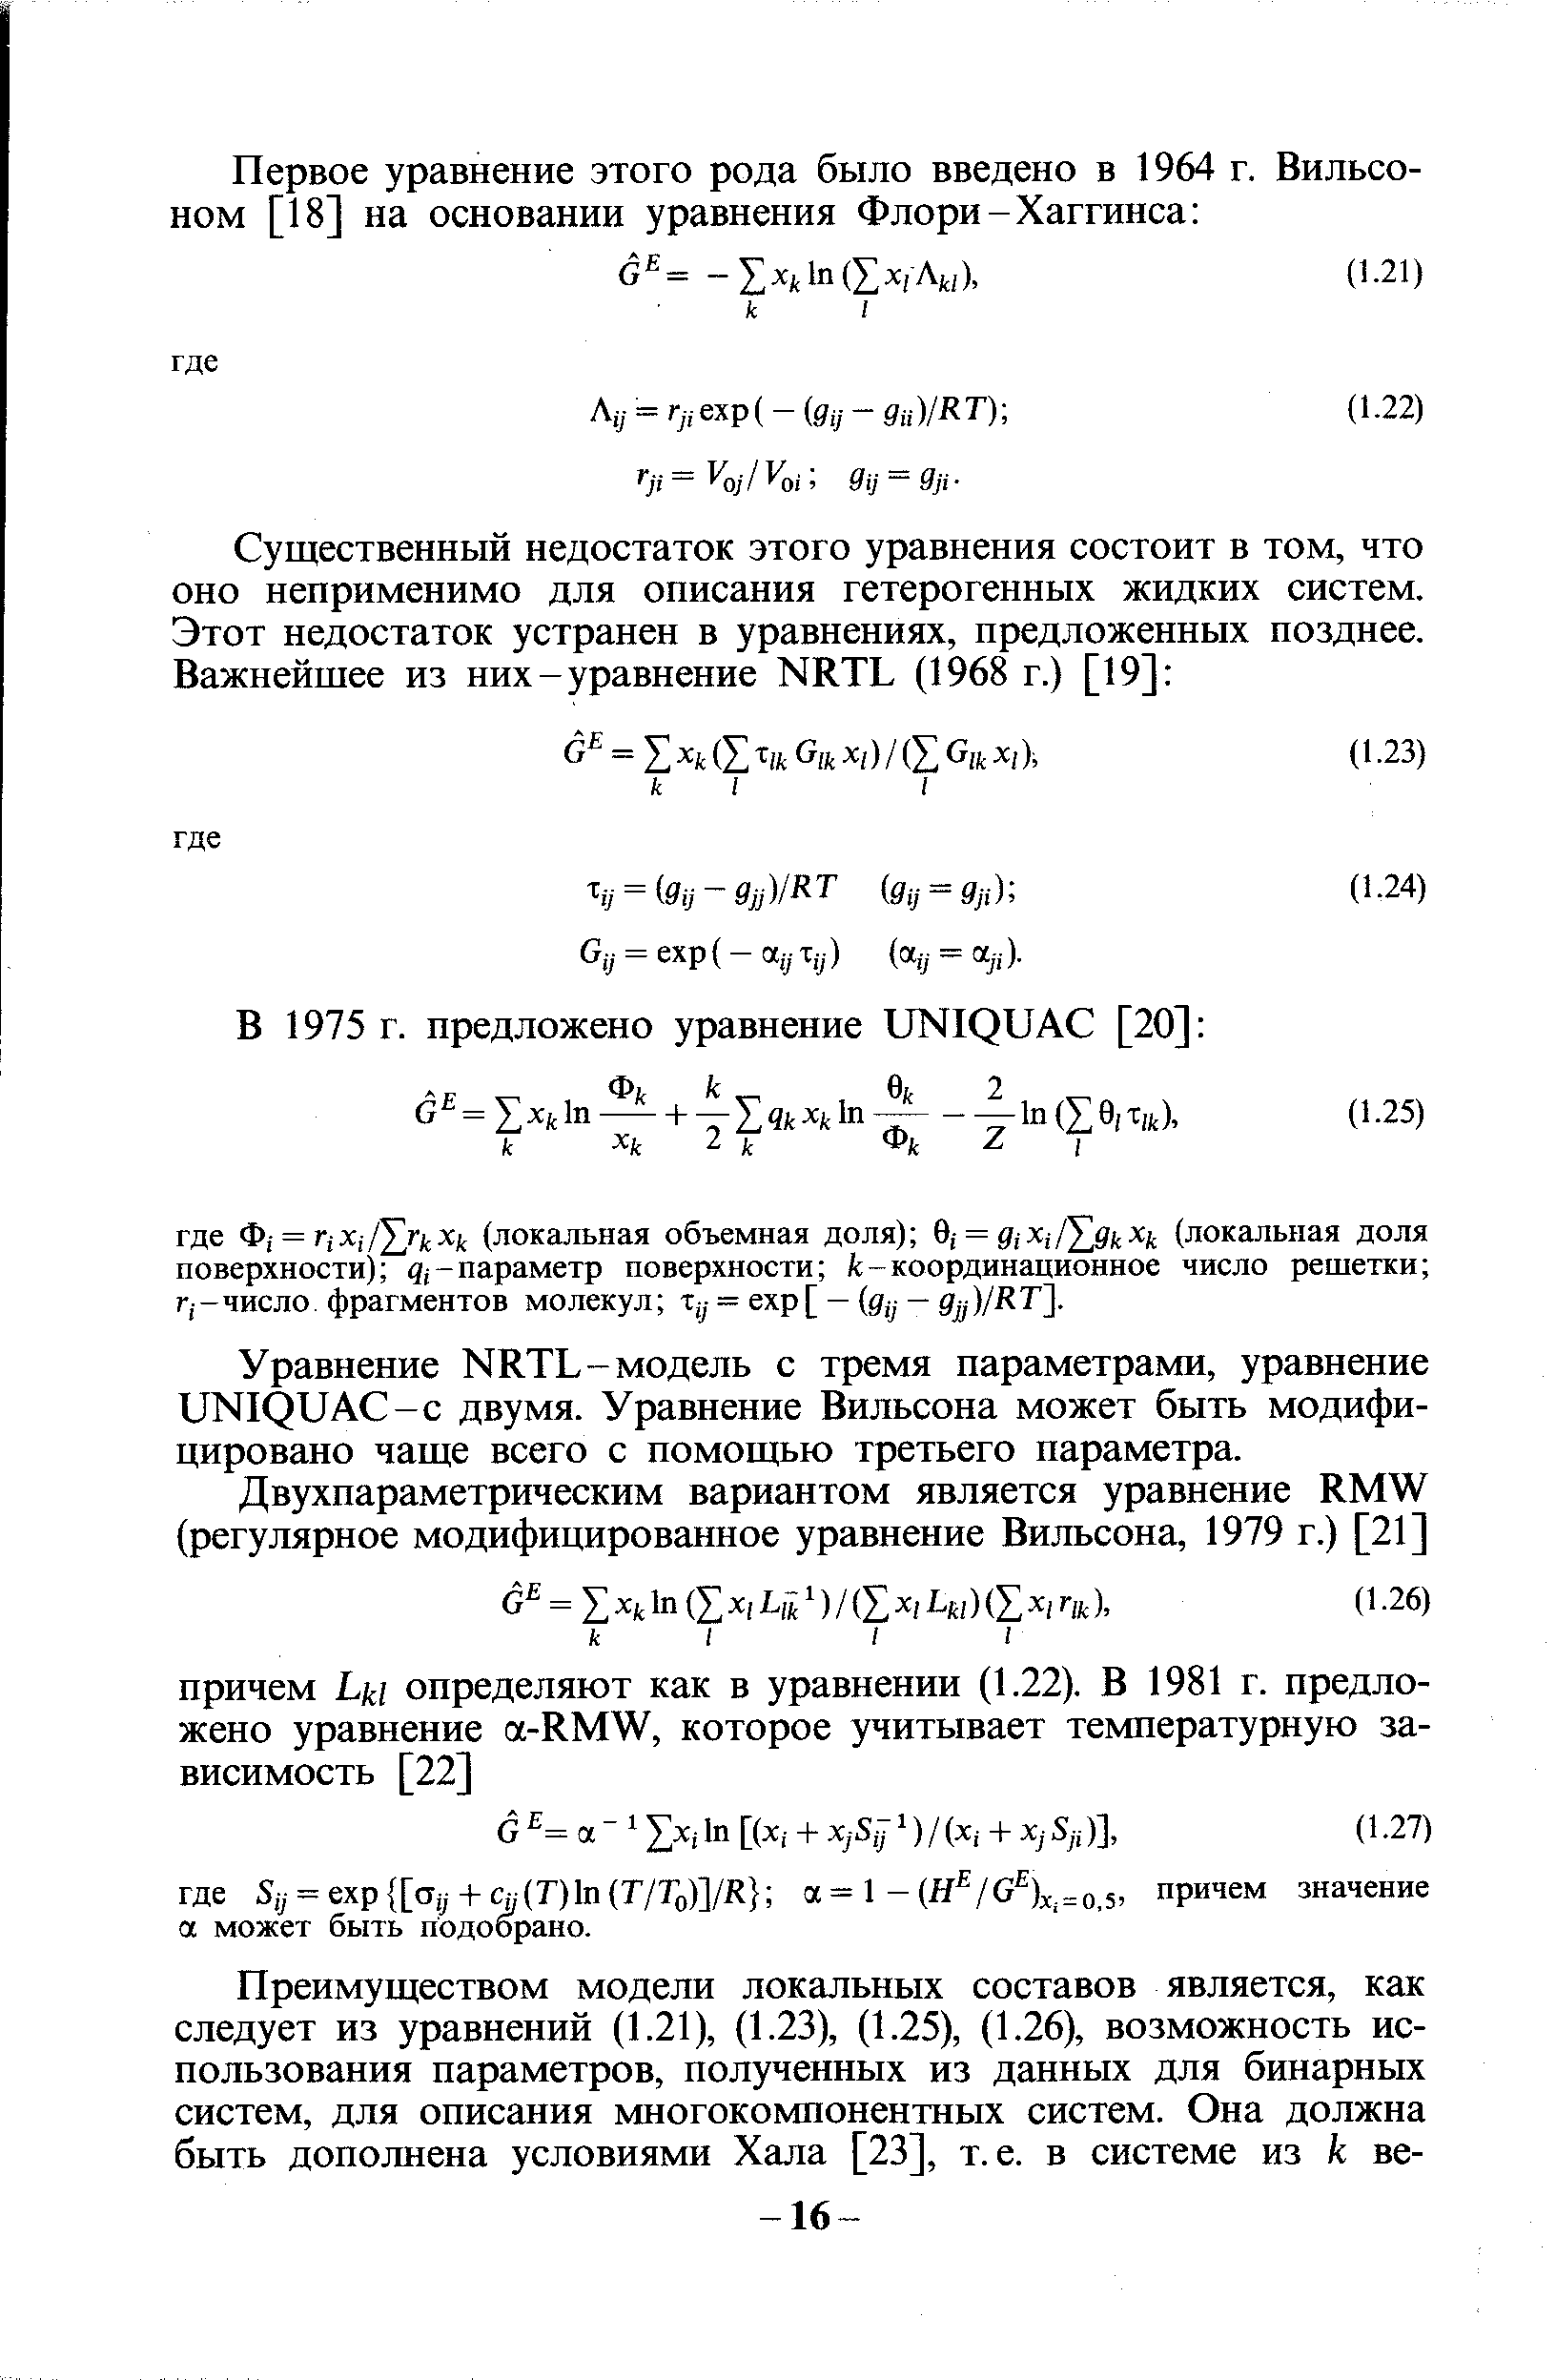 Уравнение ККТЪ-модель с тремя параметрами, уравнение иНХриЛС-с двумя. Уравнение Вильсона может быть модифицировано чаще всего с помощью третьего параметра.